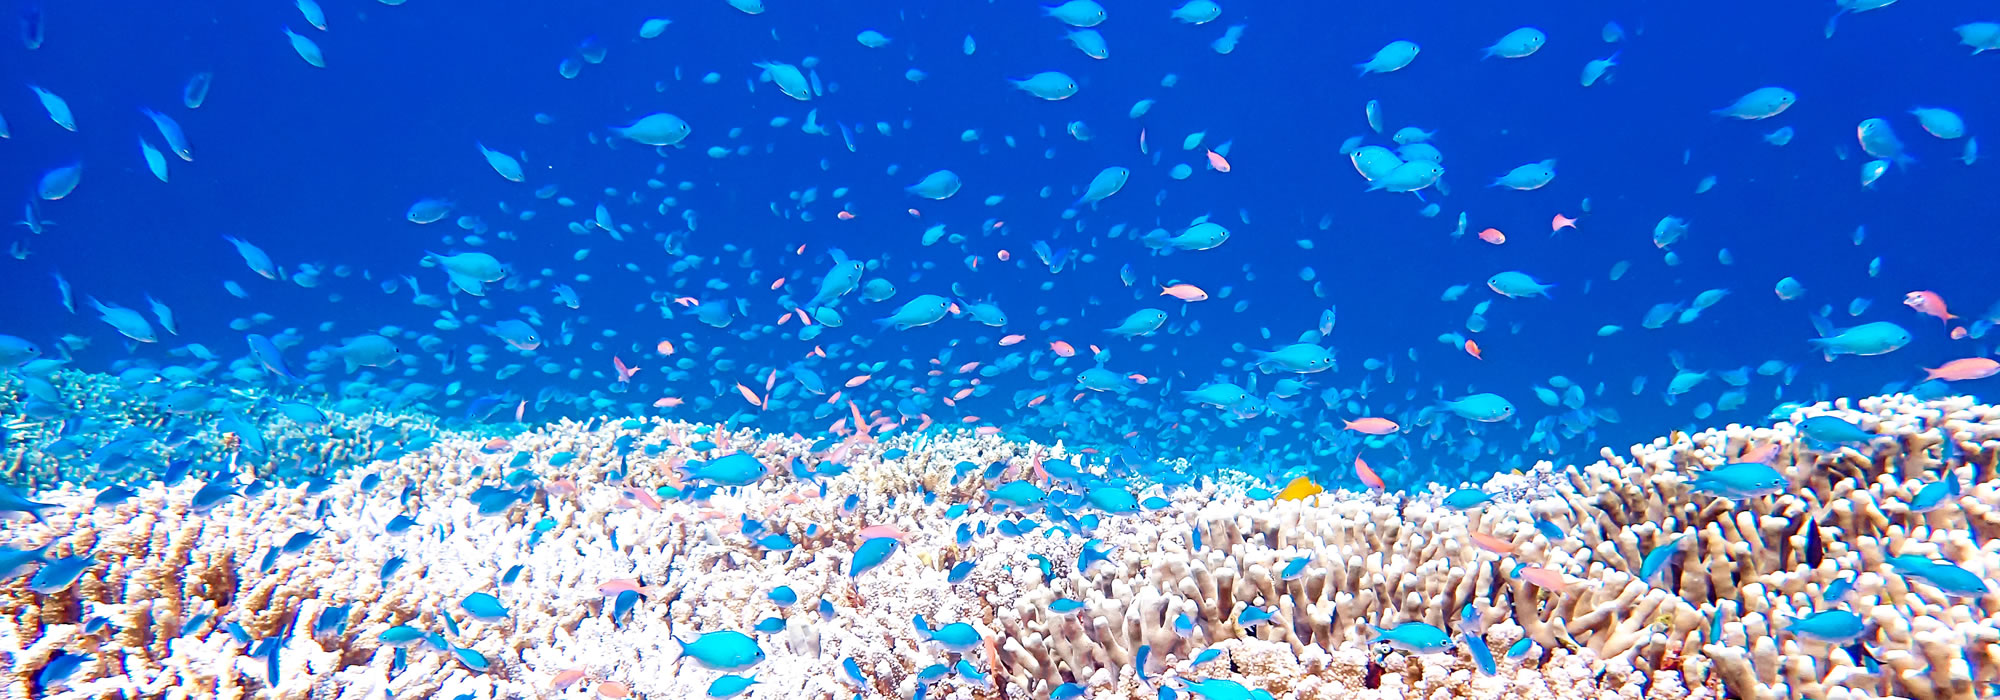 ダイビング中のサンゴ礁